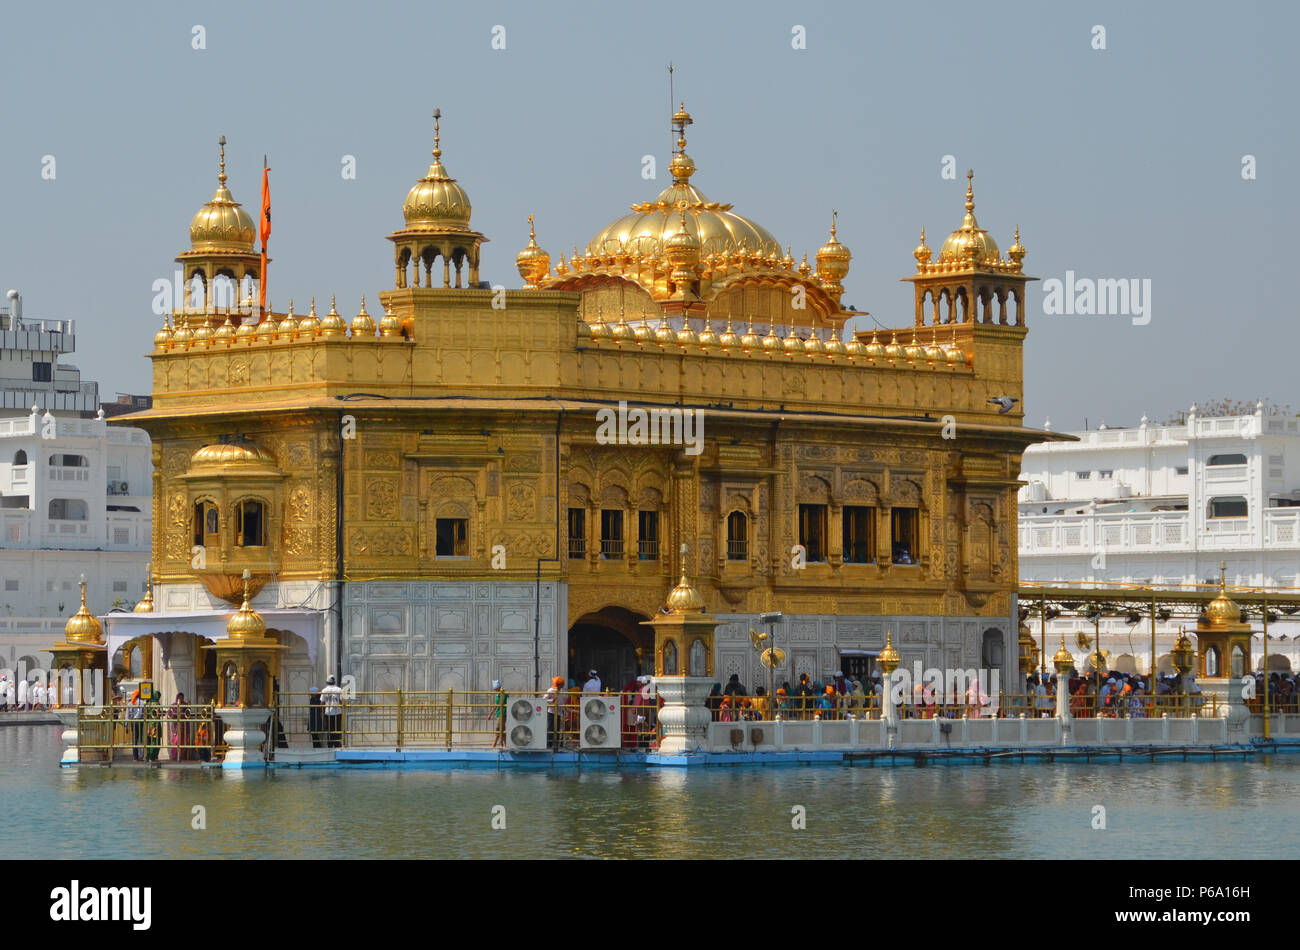 Golden Temple, Amritsar, Inde, Punjab, Harmandir Sahib, sanctuaire des Sikhs, construit au 16ème siècle, Temple des feuilles d'or, Grand dôme doré Banque D'Images